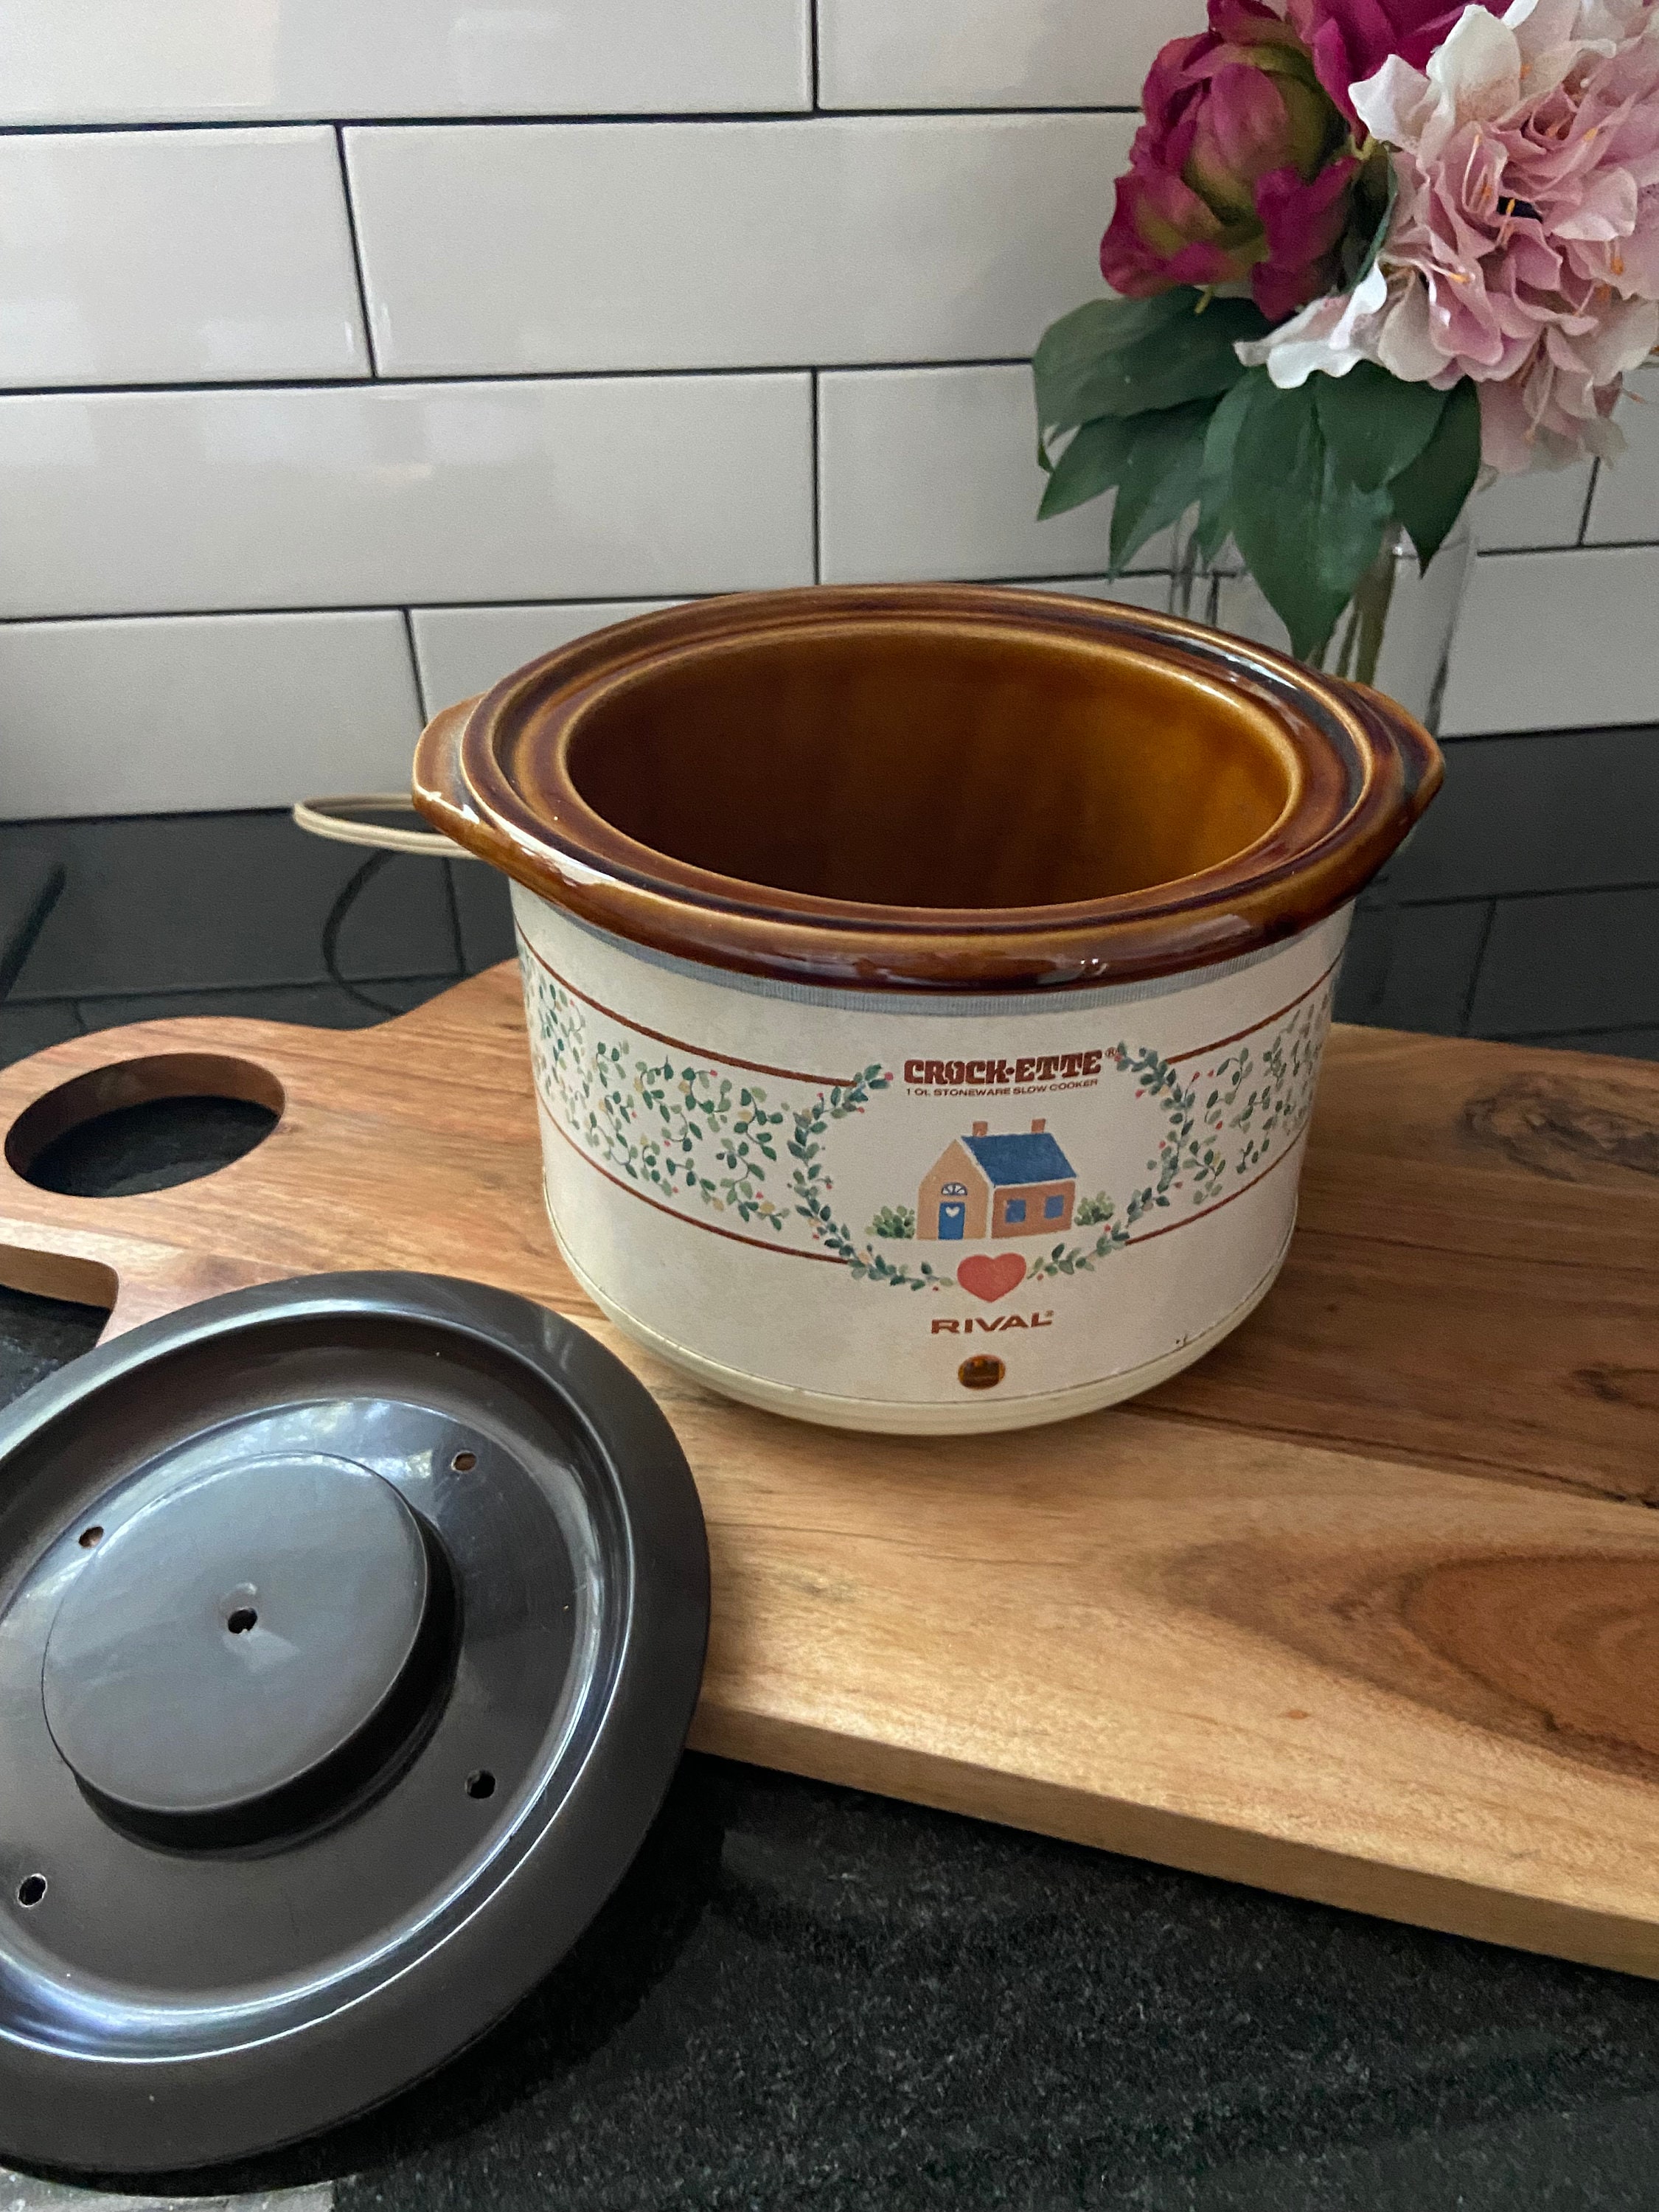 Vintage Rival 1QT Crock-Ette Slow Cooker Crock Pot Model 3200